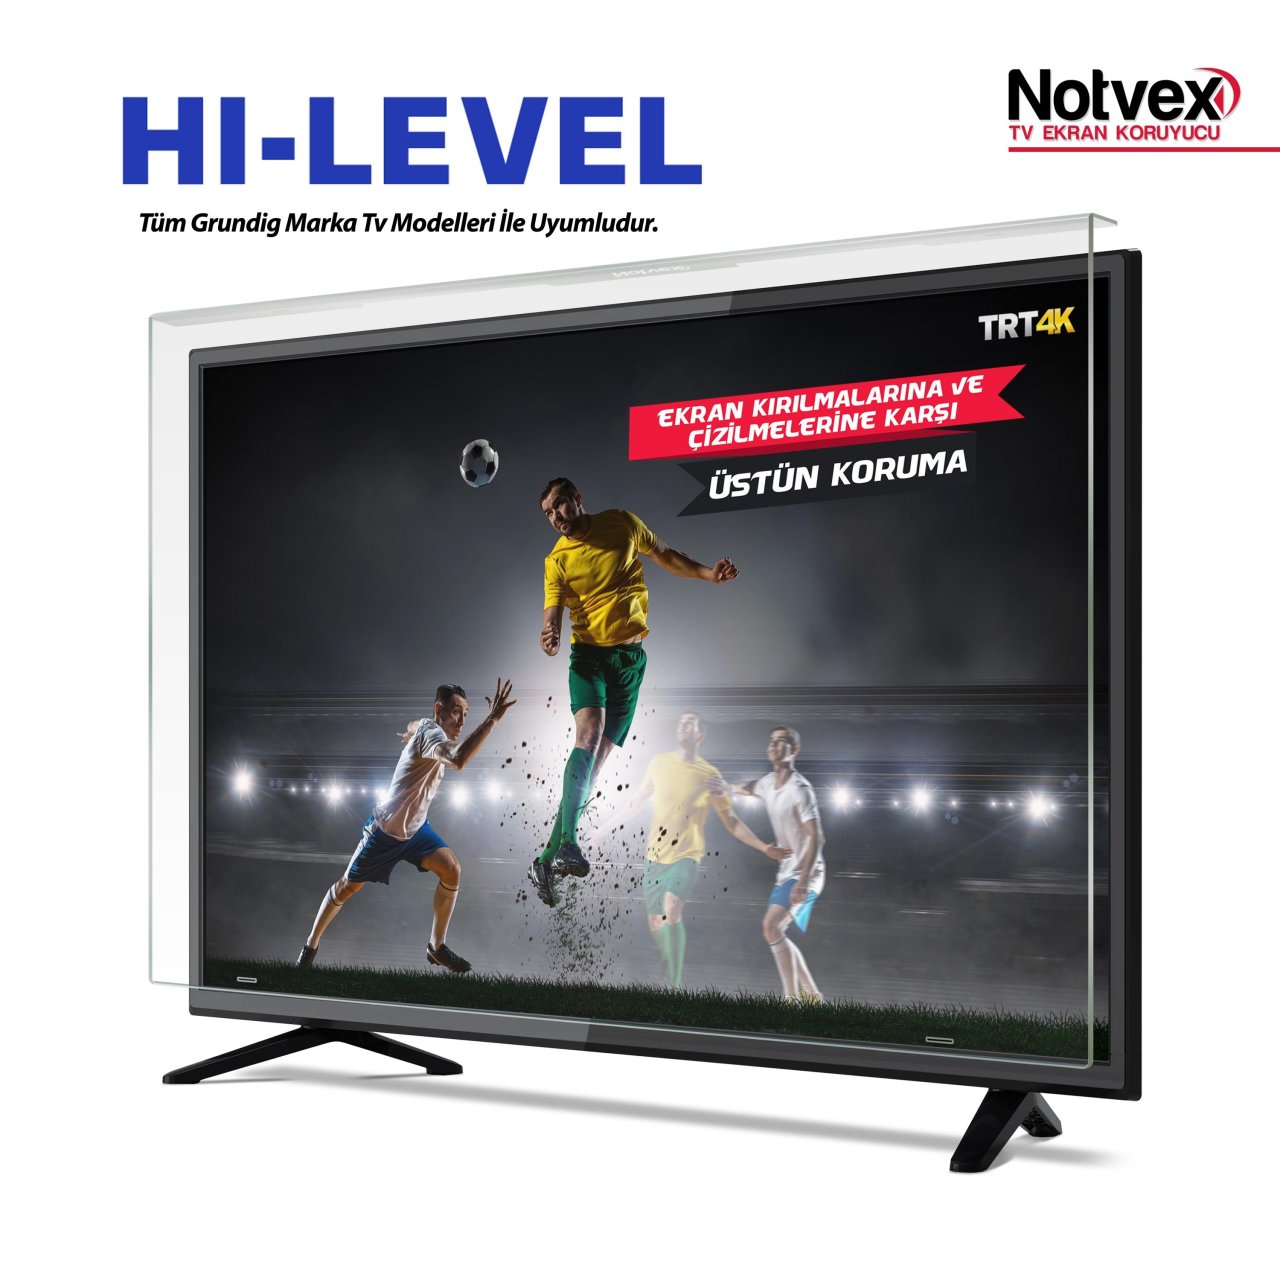 Hi-Level 43HL560 Uyumlu TV Ekran Koruyucu